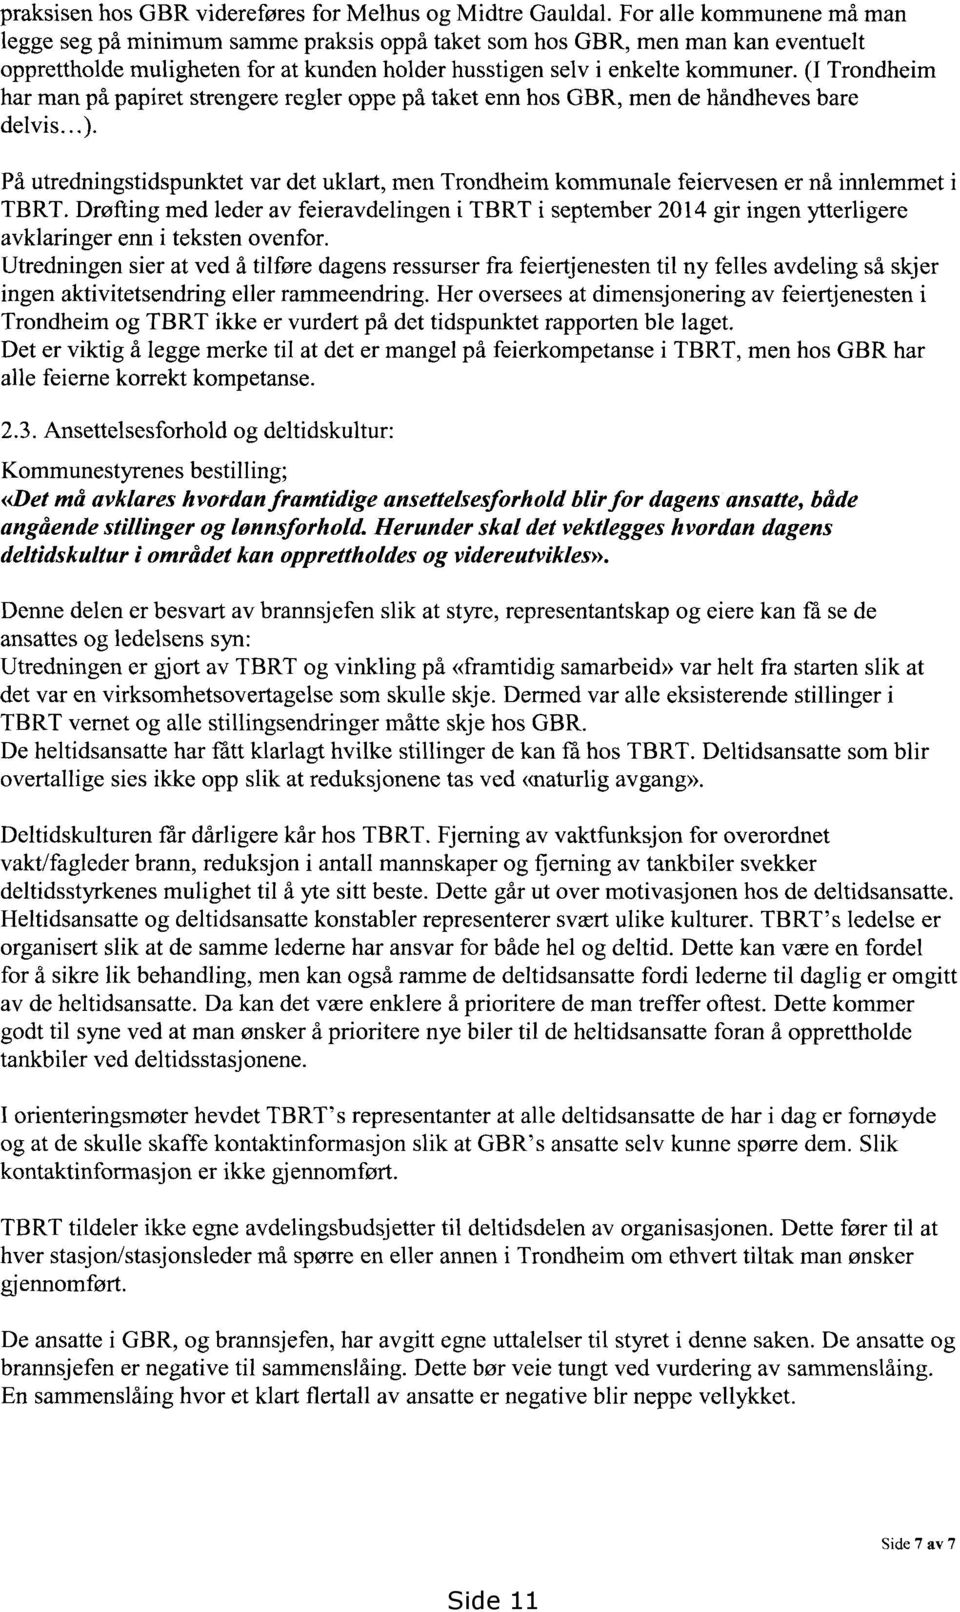 (I Trondheim har man på papiret strengere regler oppe på taket enn hos GBR, men de håndheves bare delvis...).